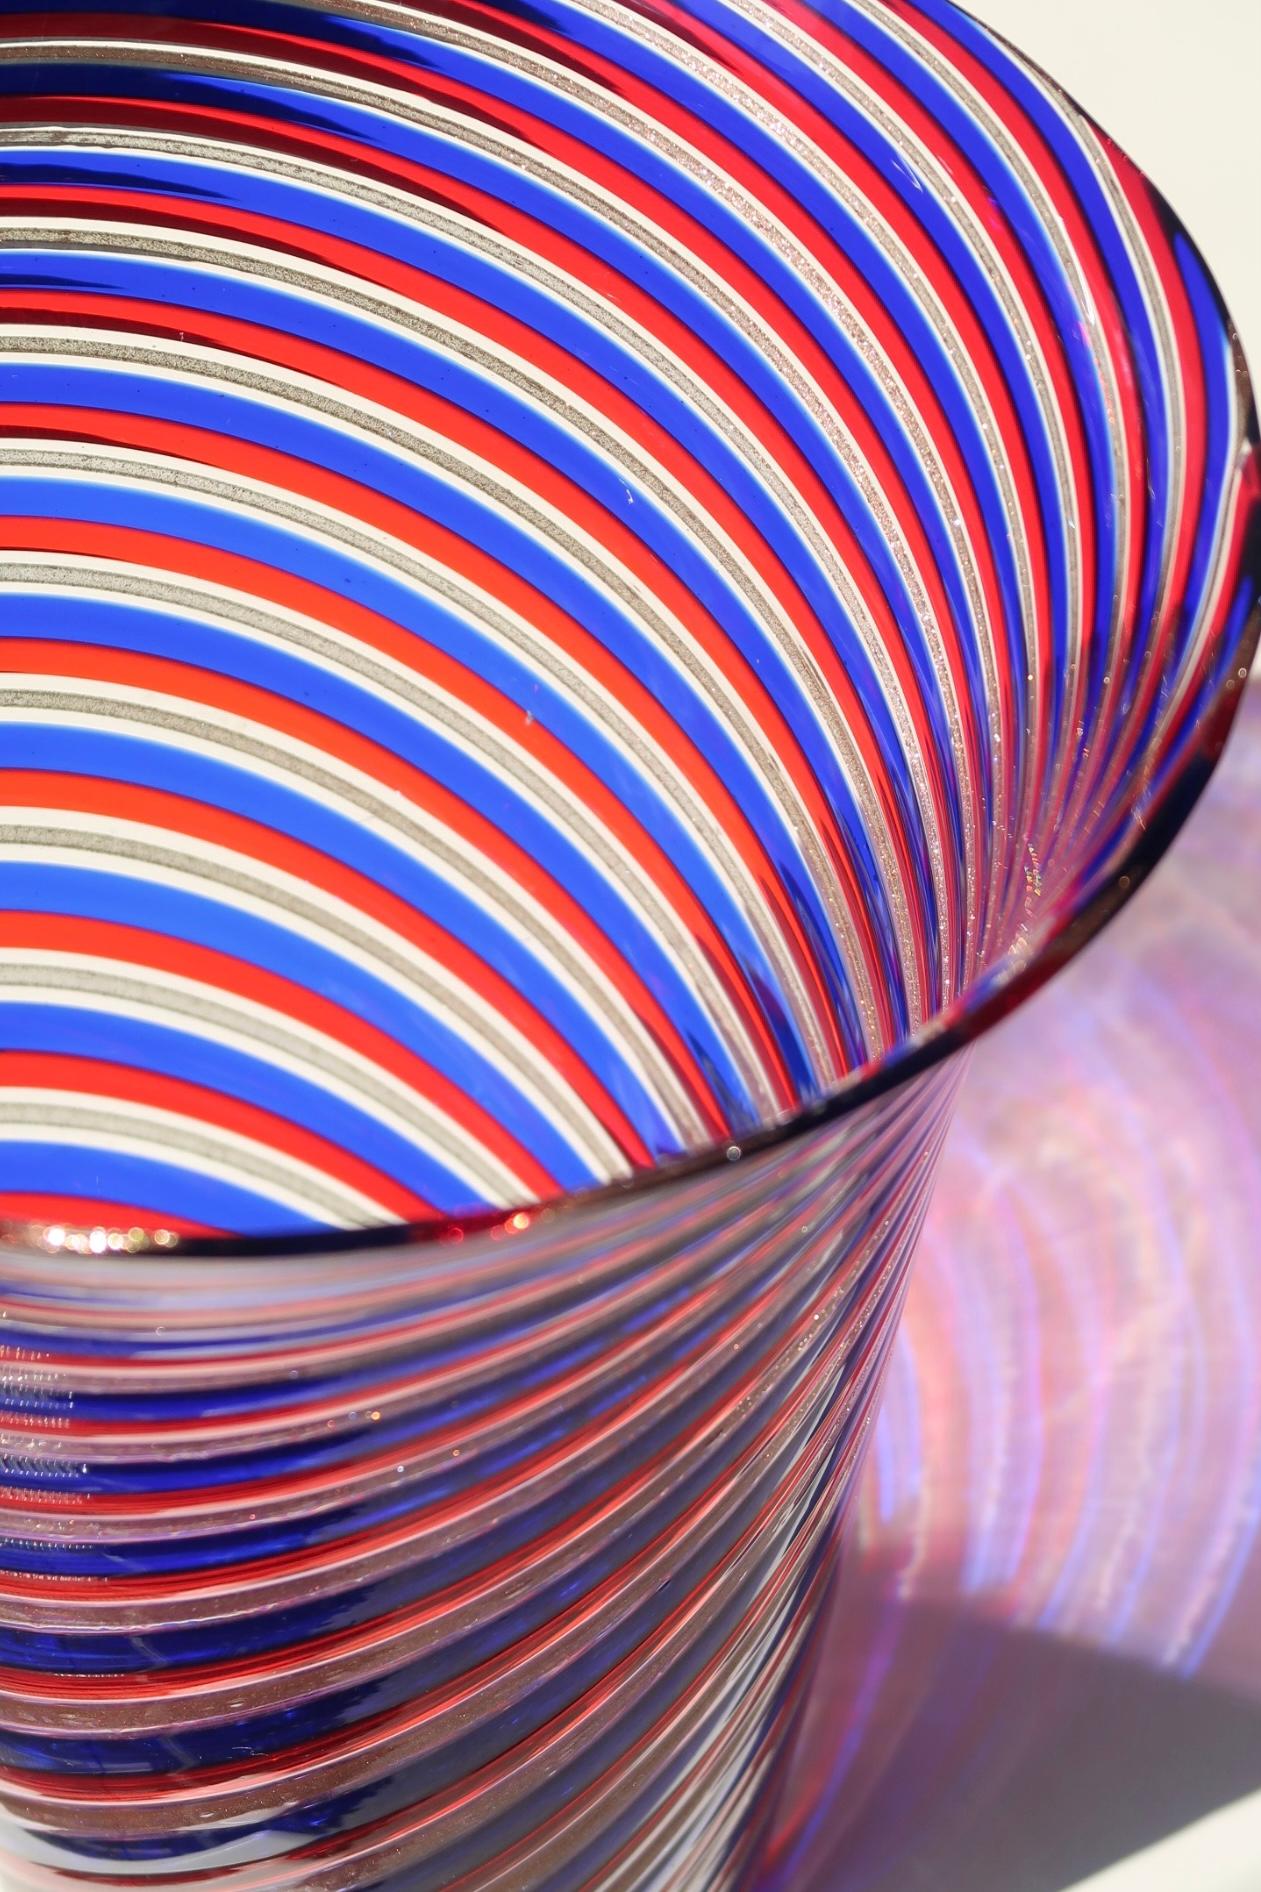 Ualmindelig stor vintage Murano vase med låg i dybe nuancer af rød, blå og kobber. Mundblæst i glas i en teknik som primært er kendt fra glashusene Venini, Gio Ponti og Fratelli Toso. Håndlavet i Italien, 1970erne.
H: 26,5 cm D:20,5 cm